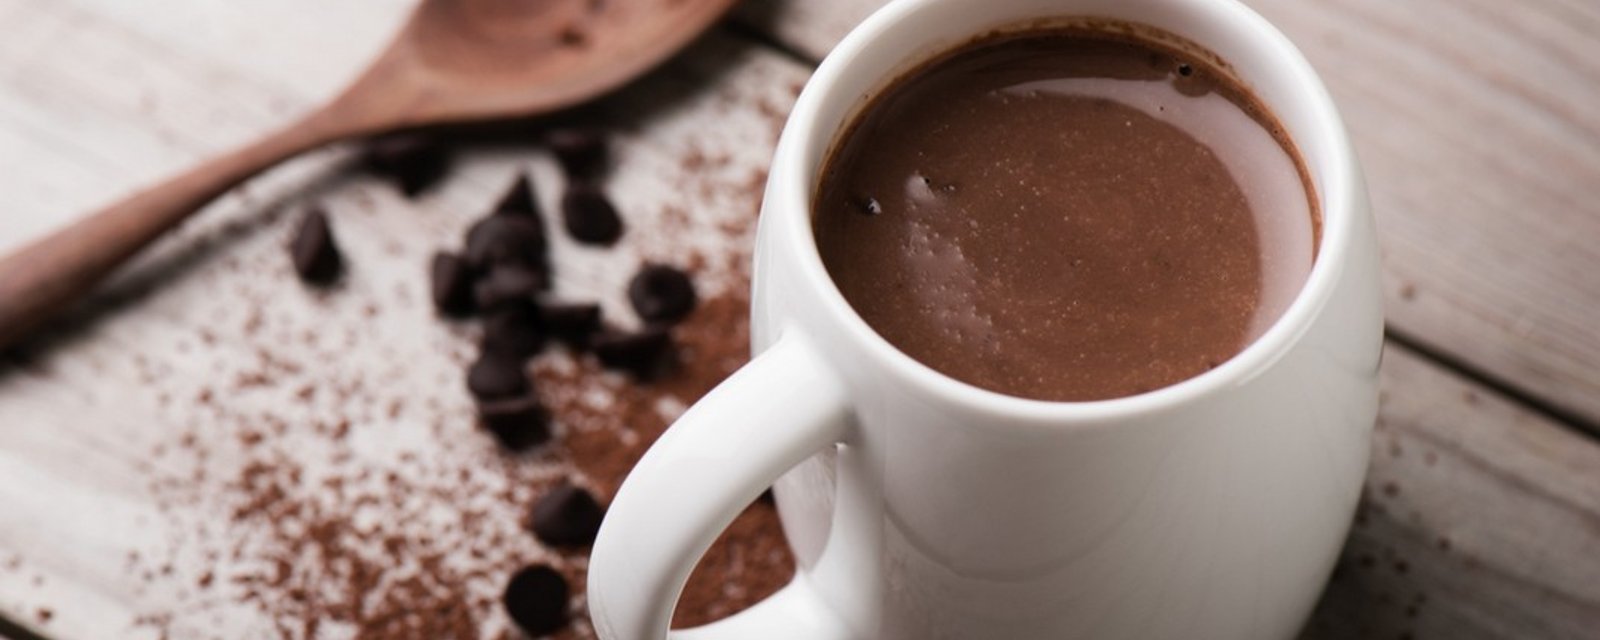 Plaisir chocolaté : la recette d’un délicieux chocolat chaud fait maison!